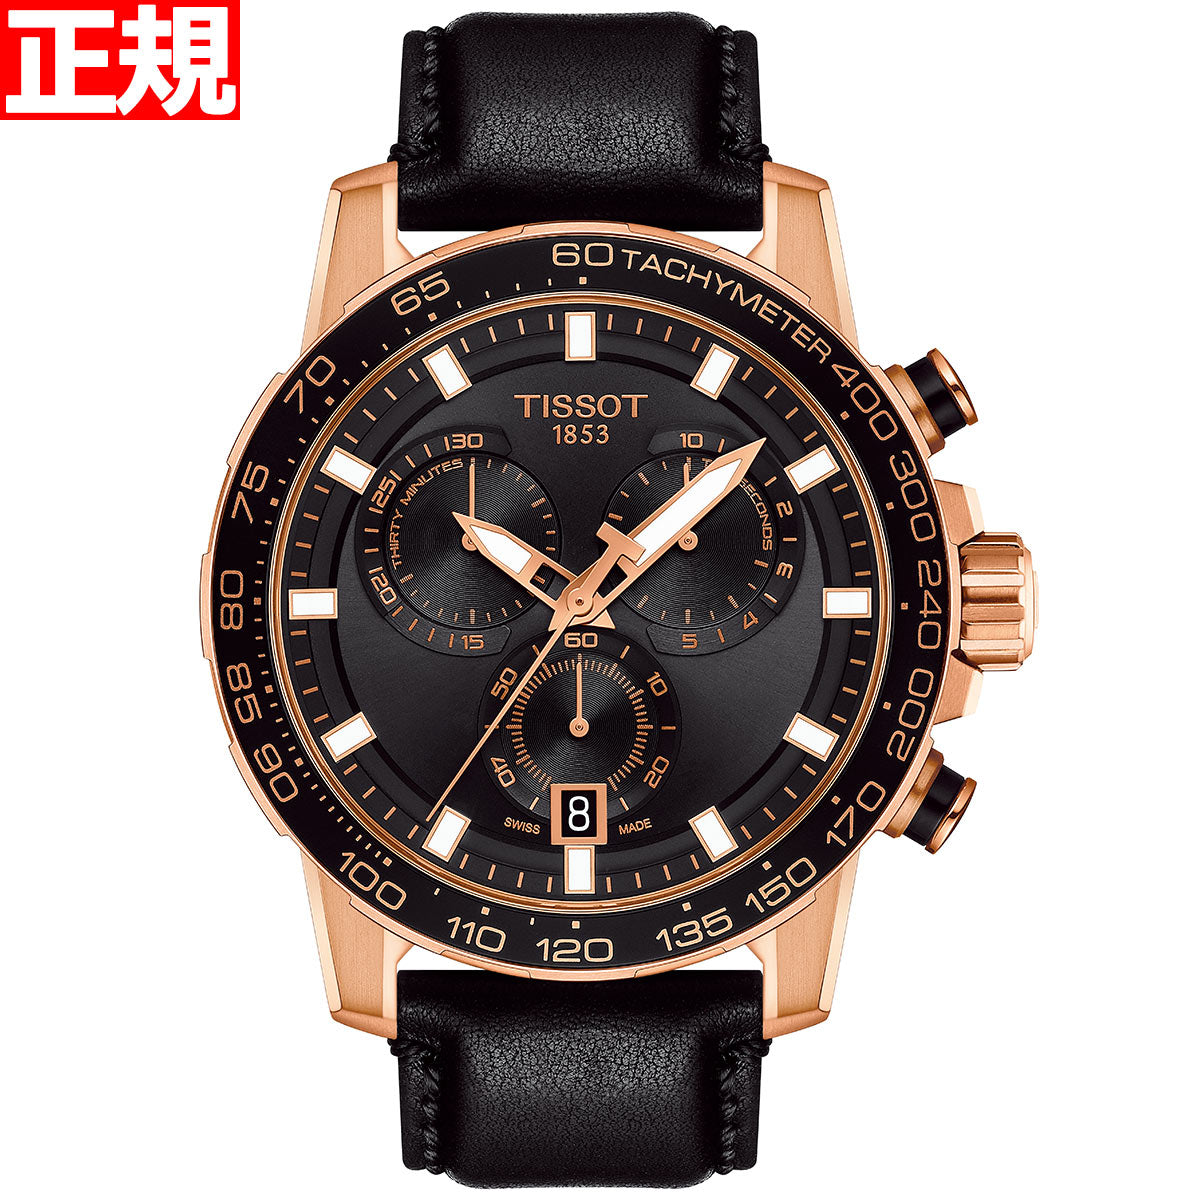 TISSOT スーパースポーツ クロノグラフ - 腕時計(アナログ)